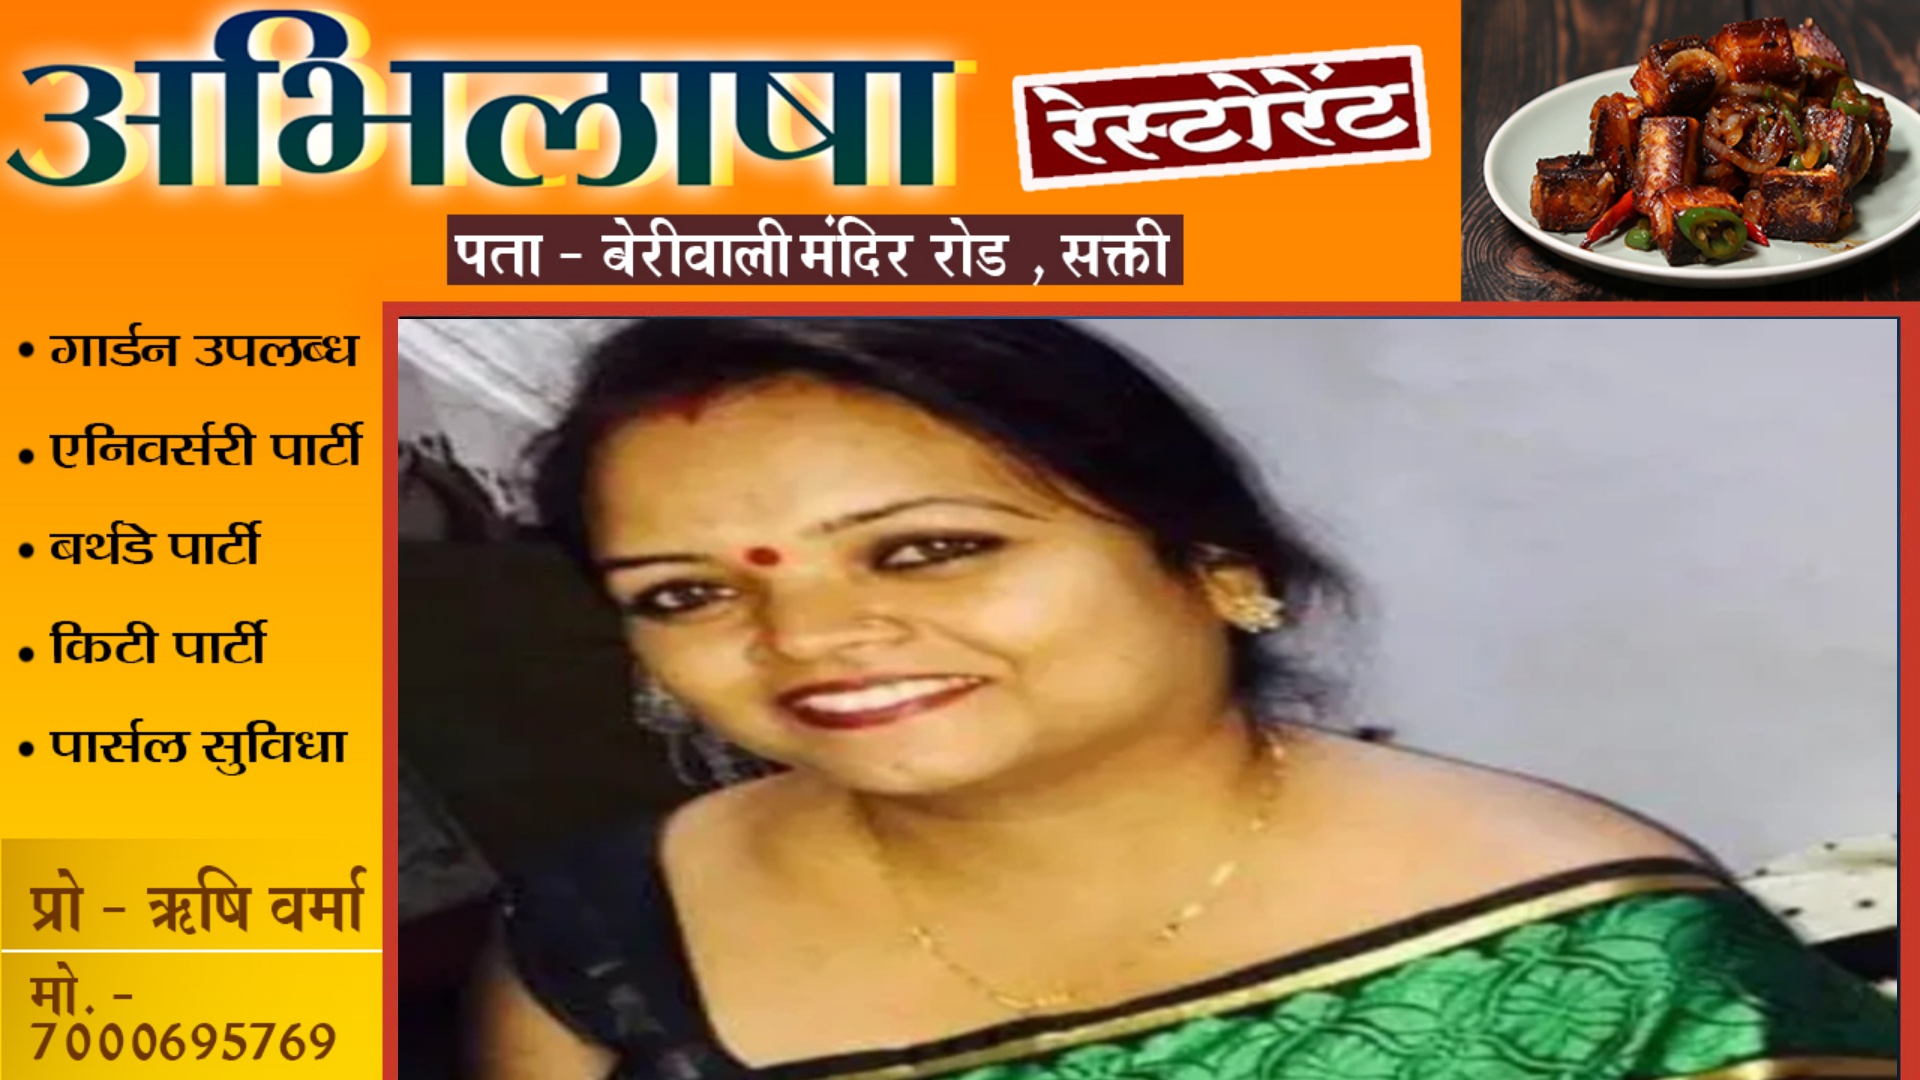 छत्तीसगढ़ - महिला कांग्रेस कमेटी की प्रदेश महामंत्री रश्मि सिंह का निधन , पार्टी में शोक की लहर